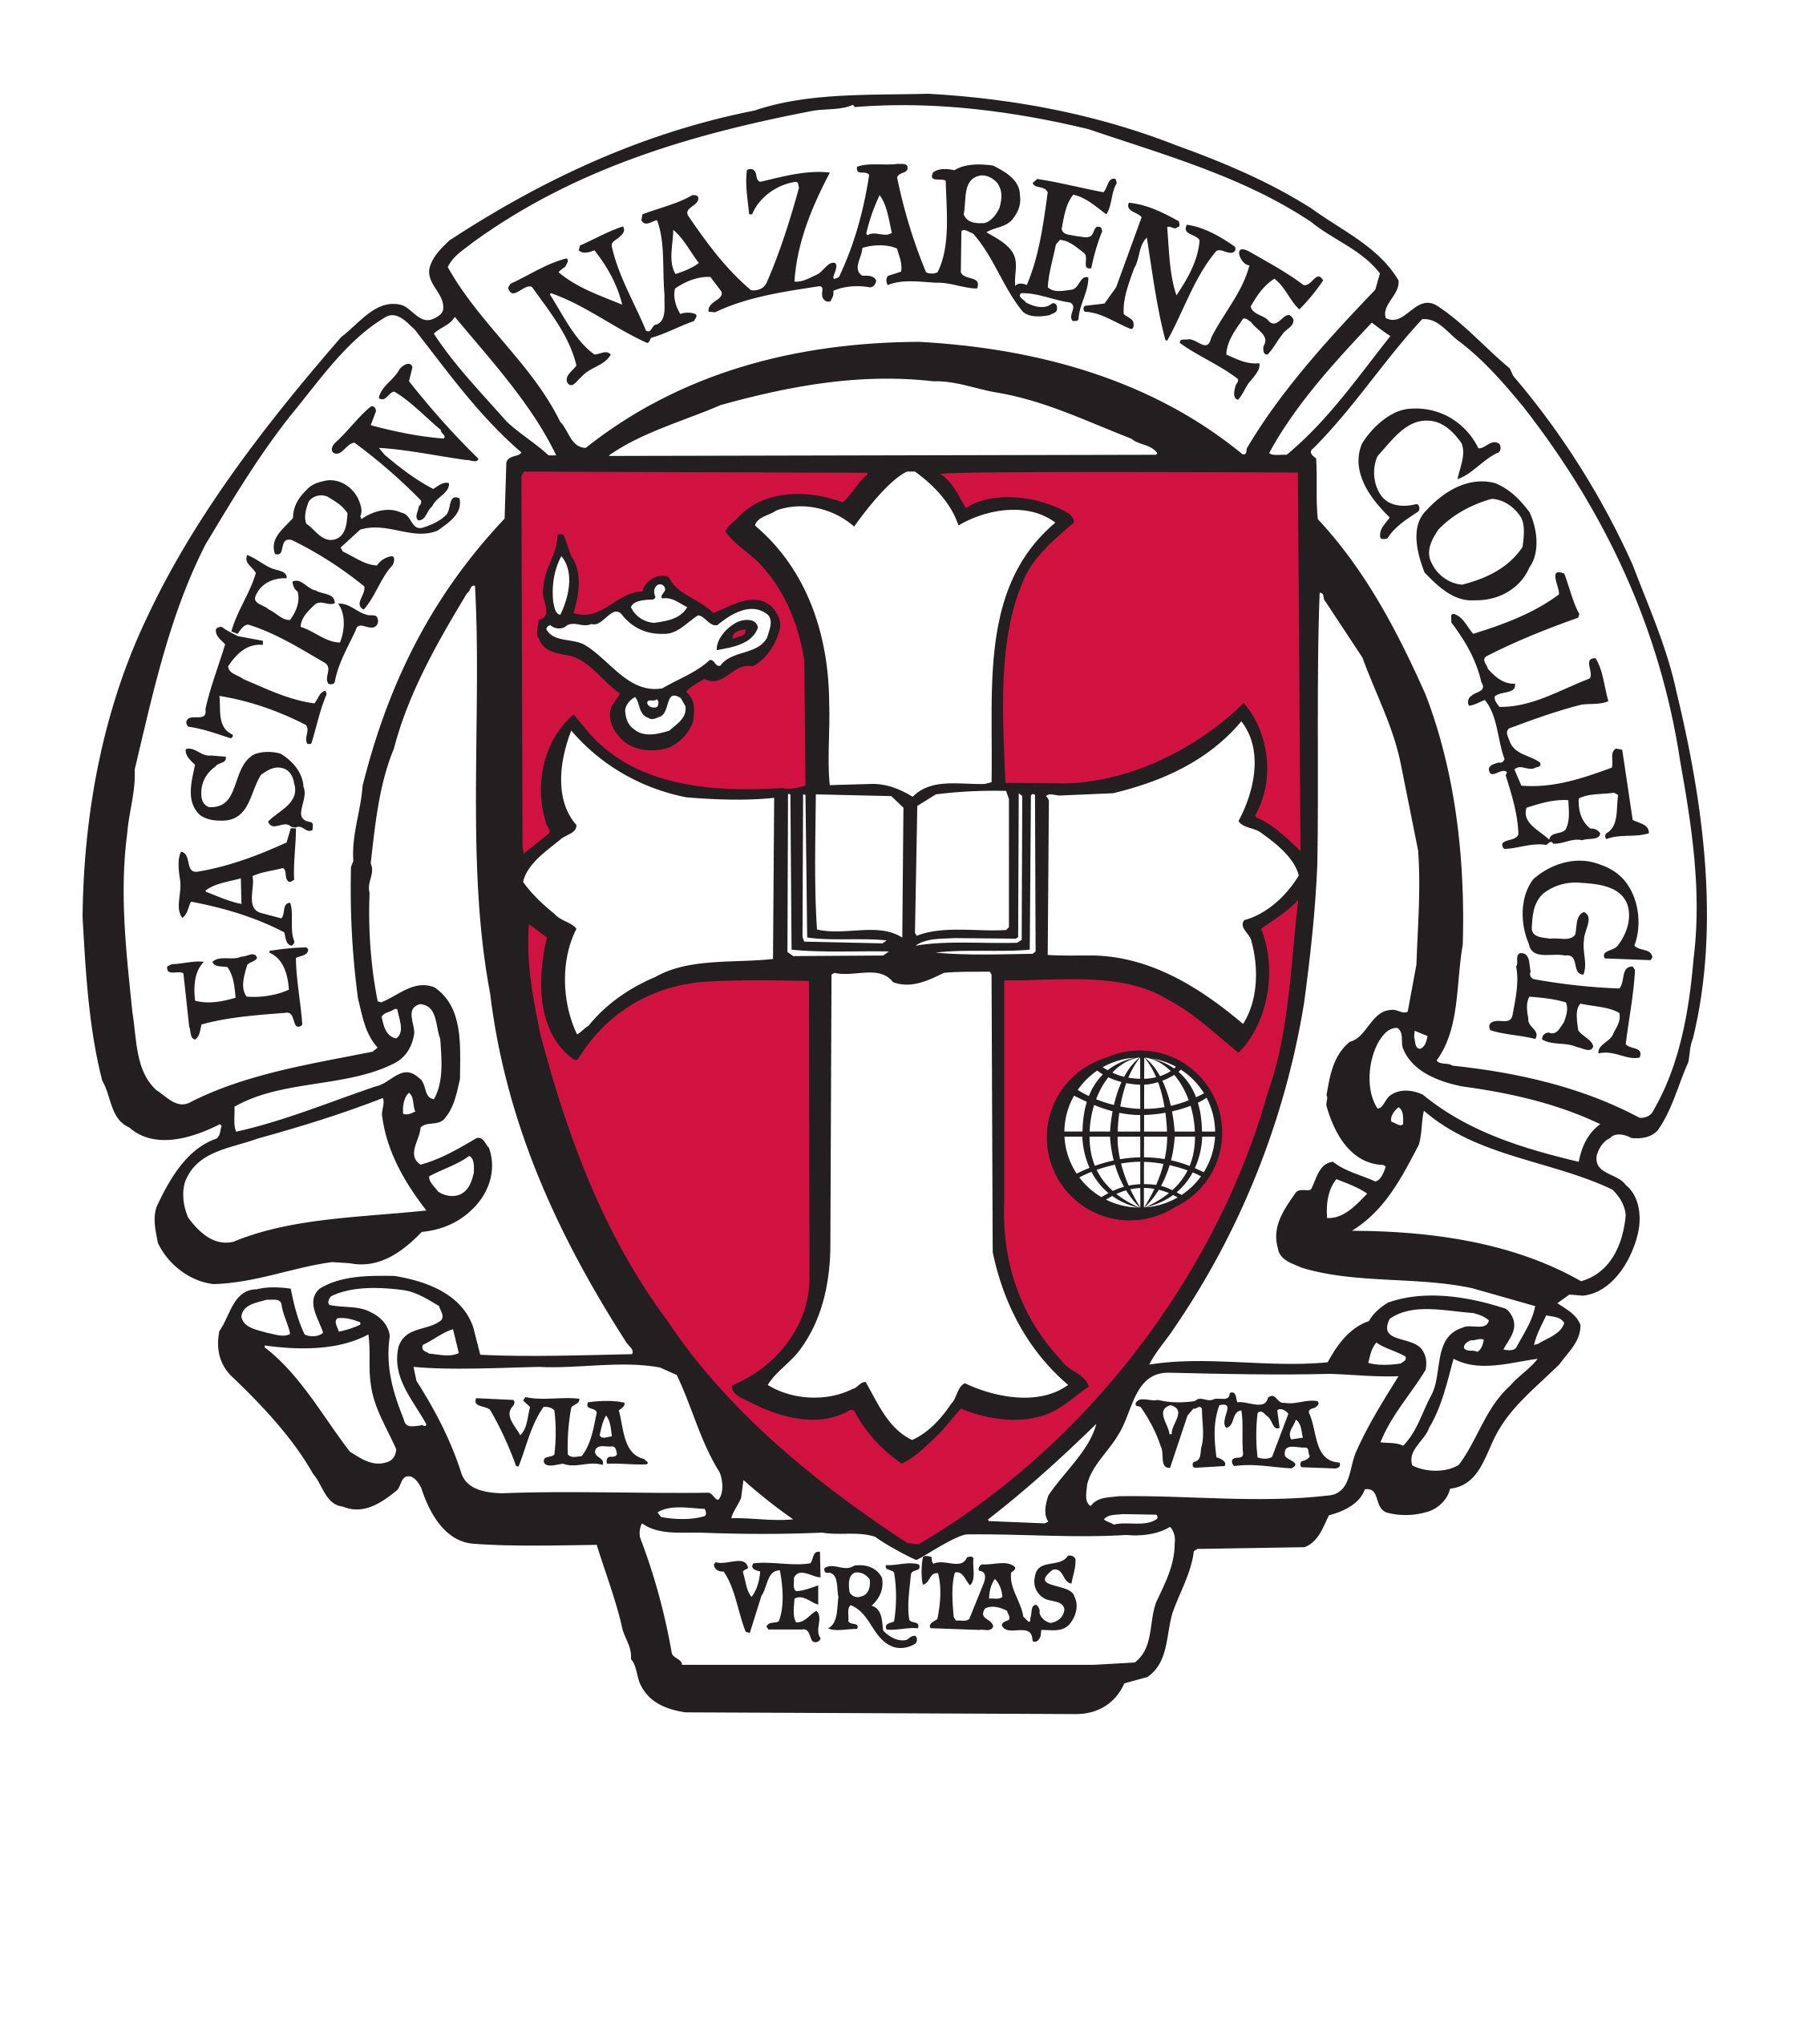 ENC Logo - Official ENC Logos Nazarene College